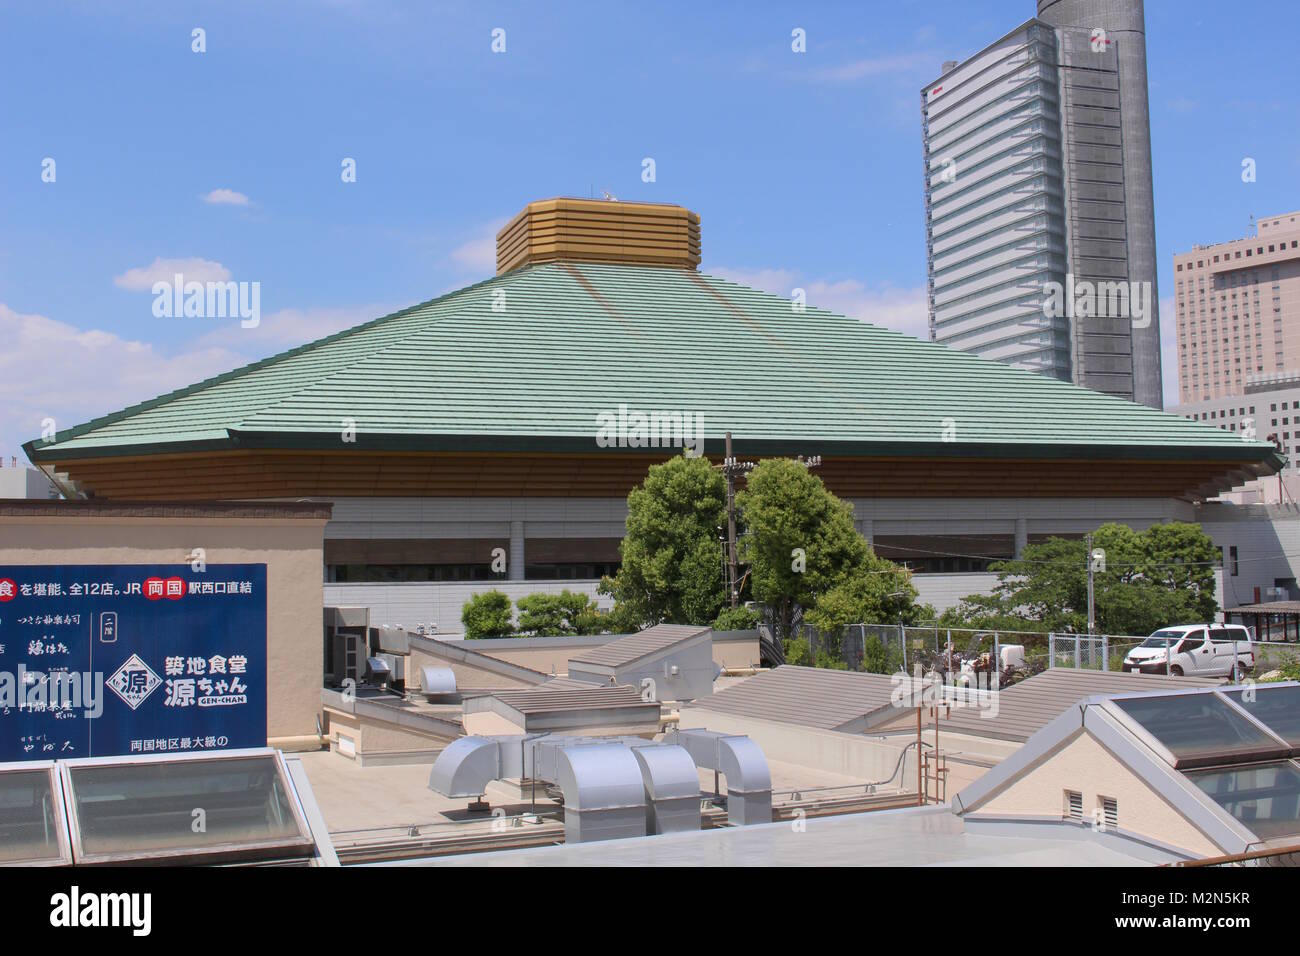 Das Dach der Ryogoku Kokugikan, eine Sportarena hauptsächlich verwendet für Sumo mit. Sie wird als Austragungsort für Boxkämpfe an den Olympischen Spielen 2020 in Tokio verwendet. (Juni 2017) Stockfoto